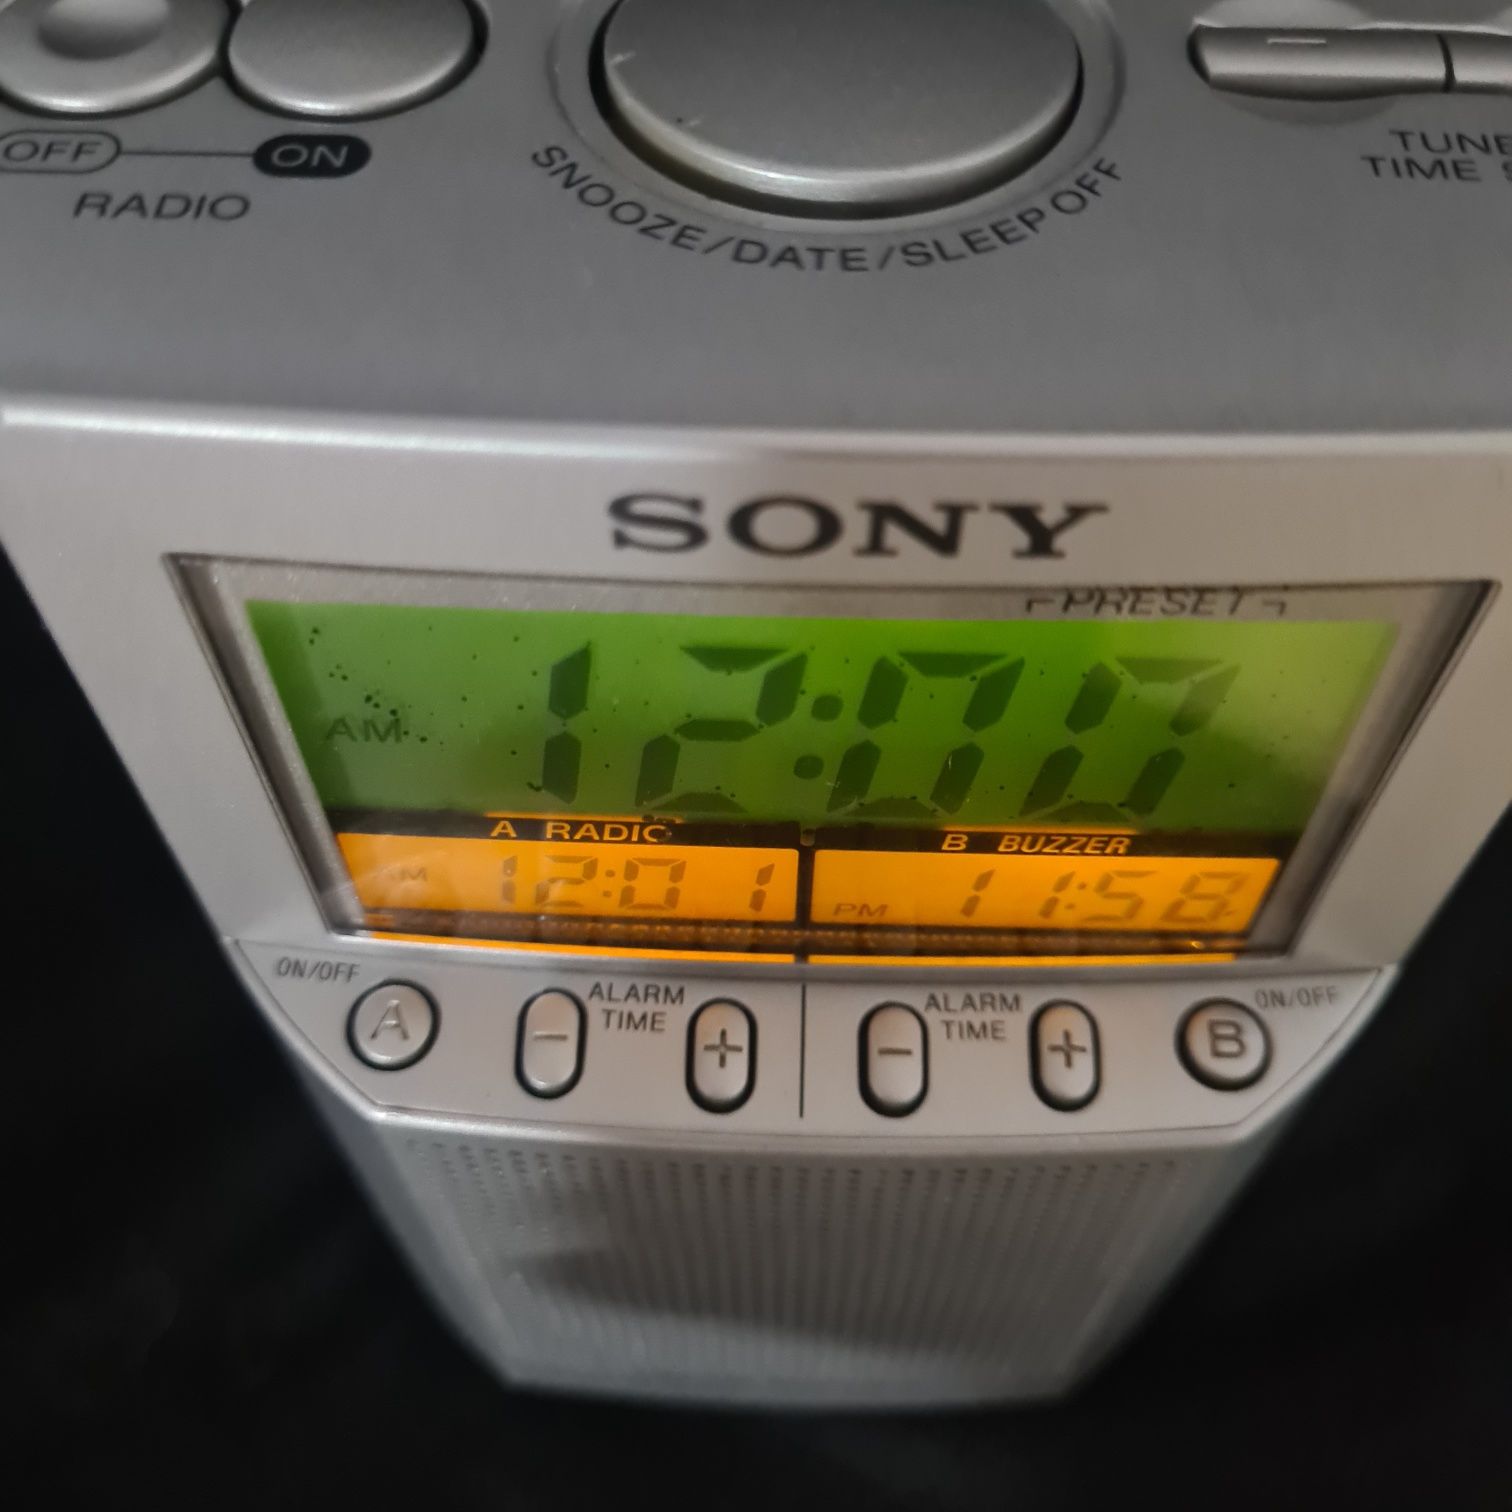 Sony ICF-C793 AM/FM Clock Radio